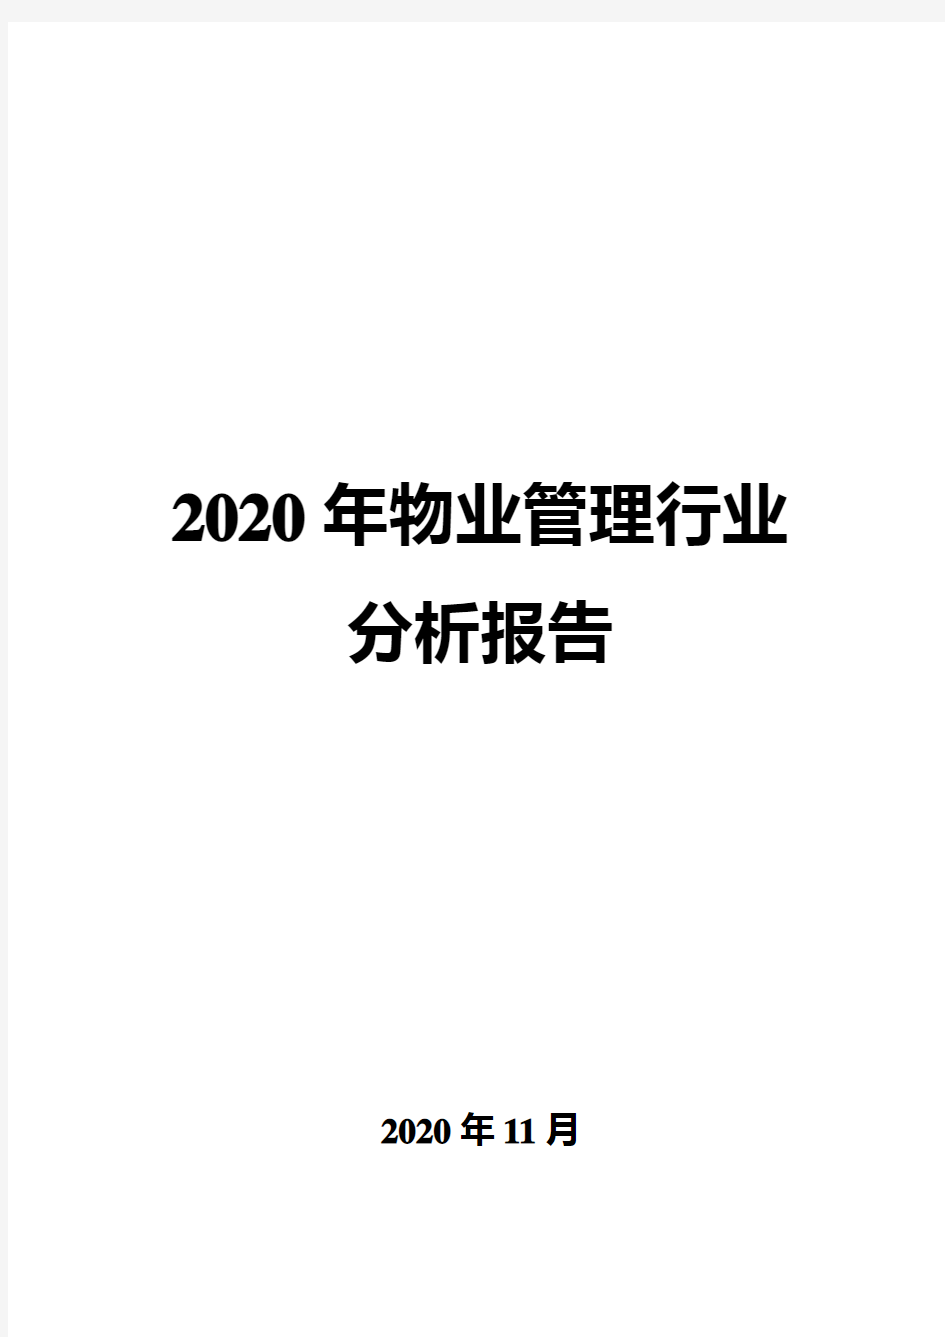 2020年物业管理行业分析报告